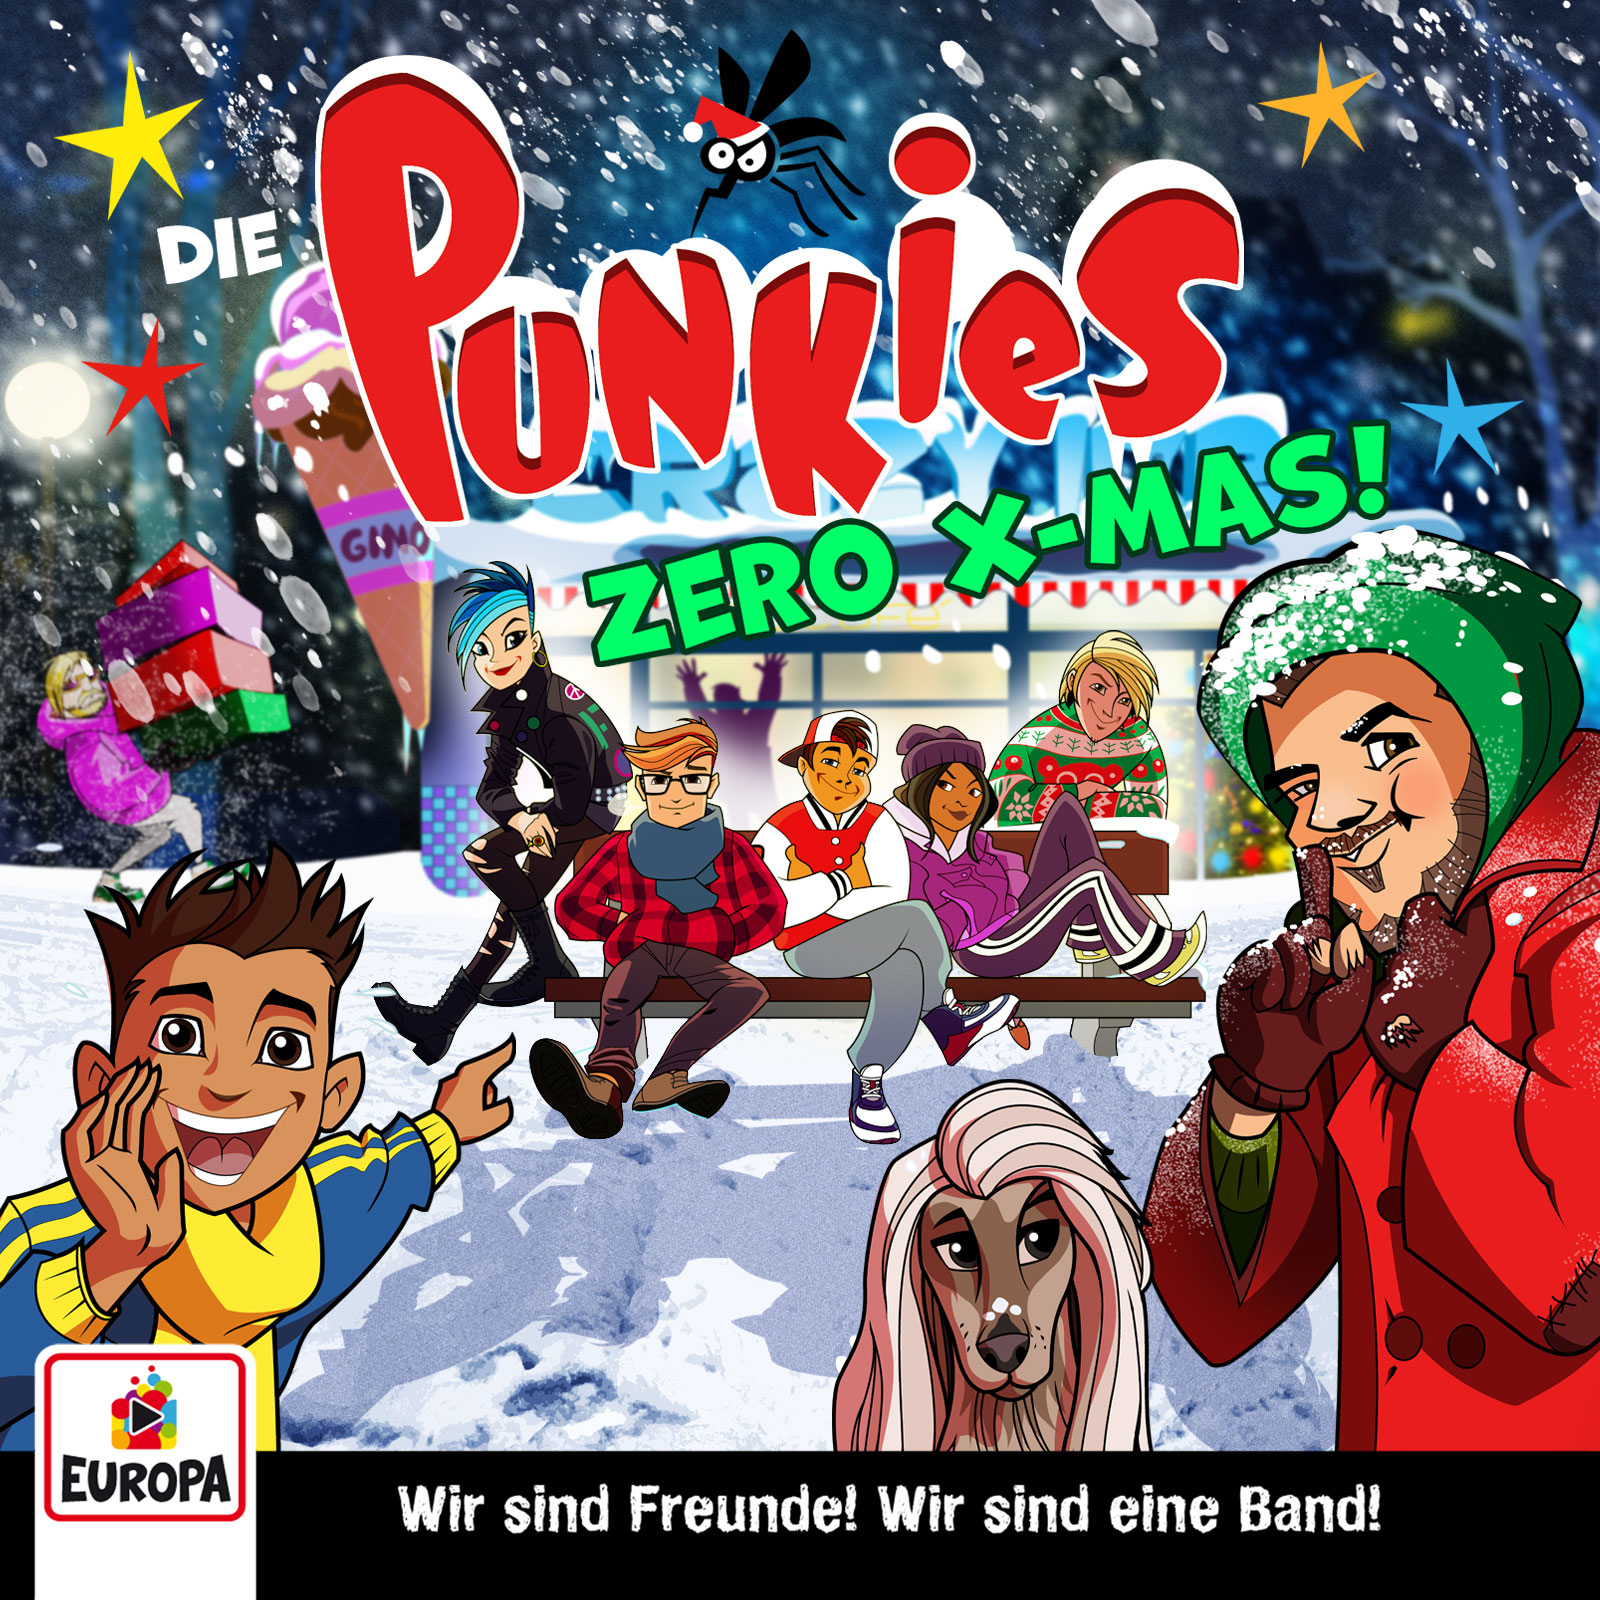 Die Punkies  - Zero X-Mas! (Adventskalender) 